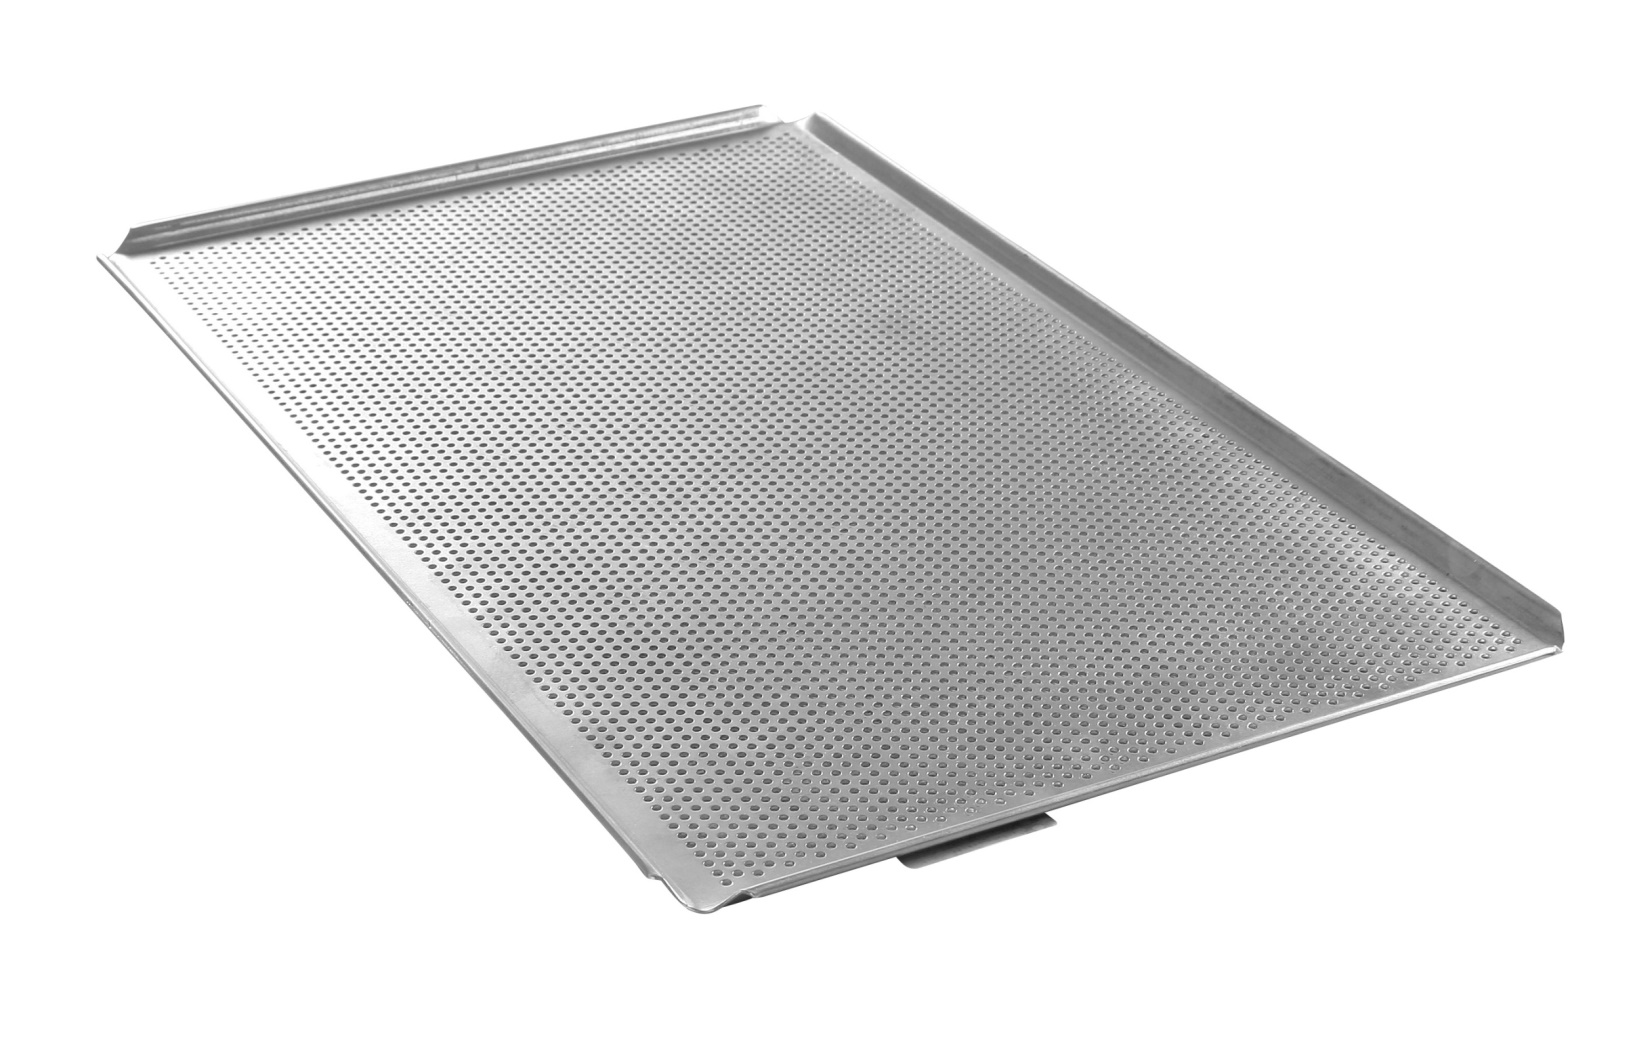 Teglia forata GN 1/1 per forno - Hendi - alluminio - 808306